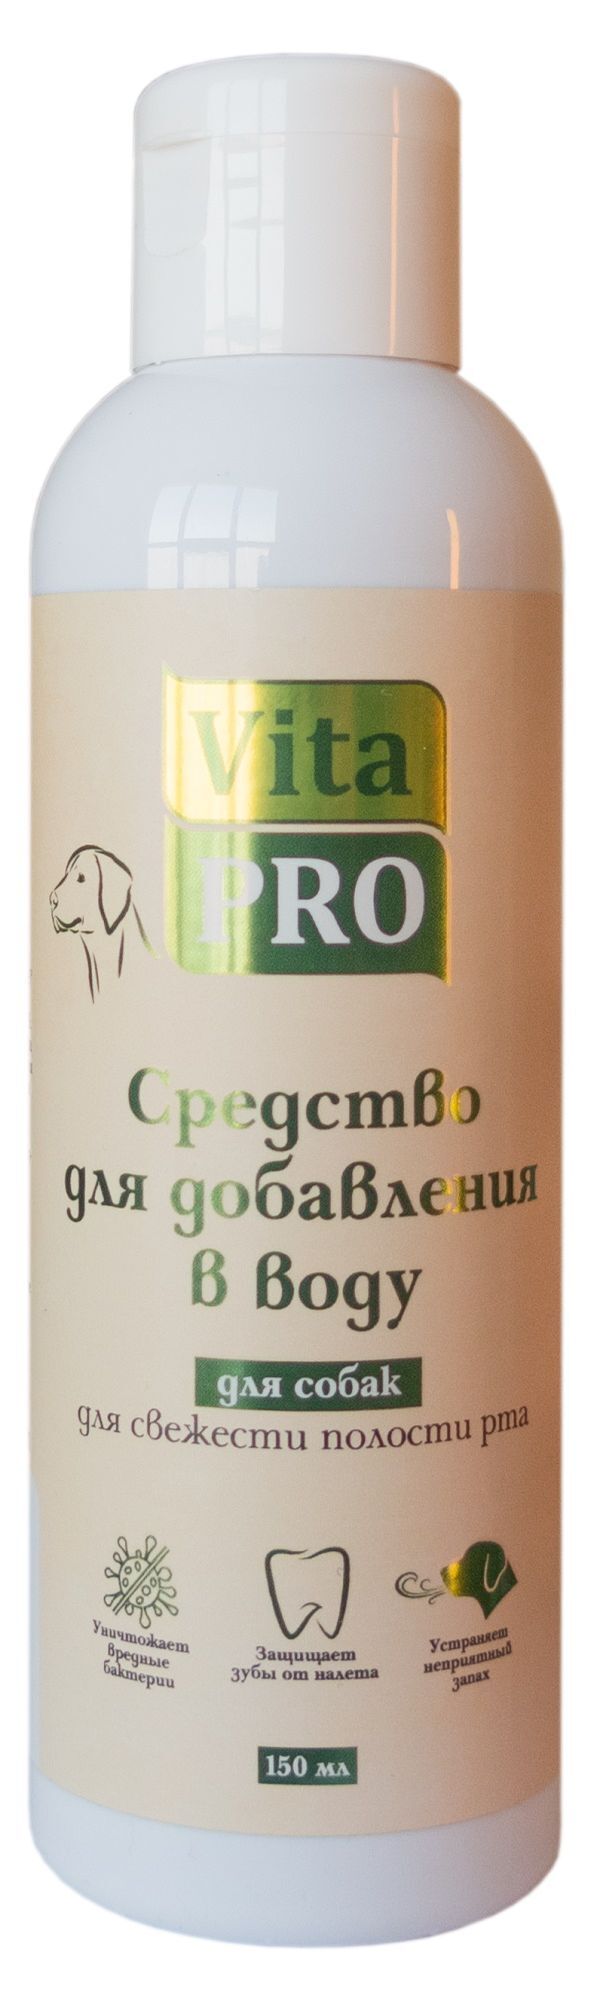 Vita Pro 150 мл средство для добавления в воду для свежести полости рта для собак 1х15